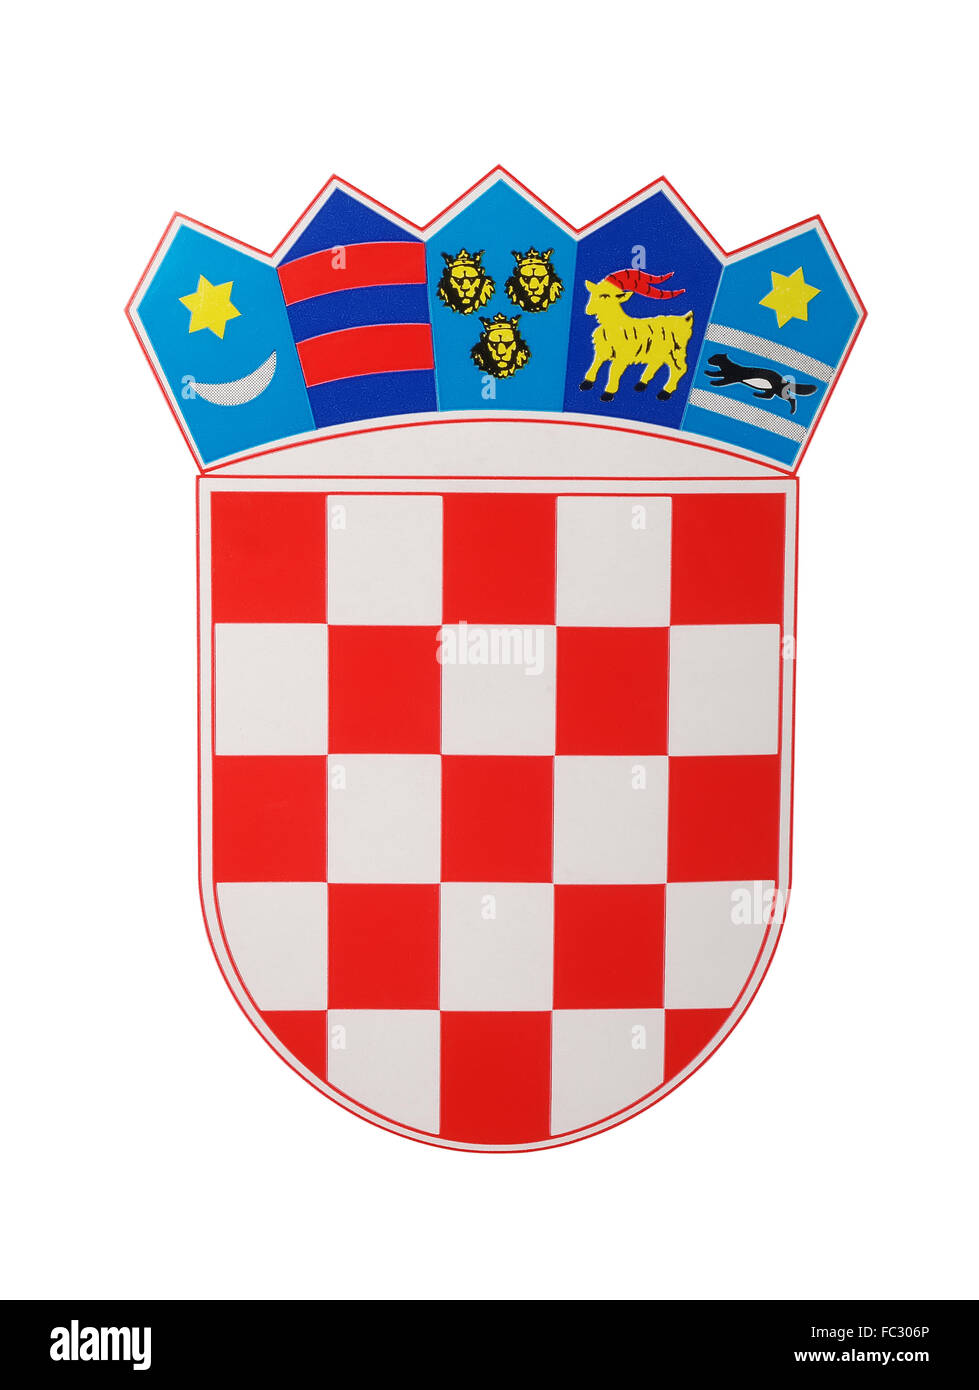 Emblema de Croacia, fotografía, Foto de estudio Foto de stock